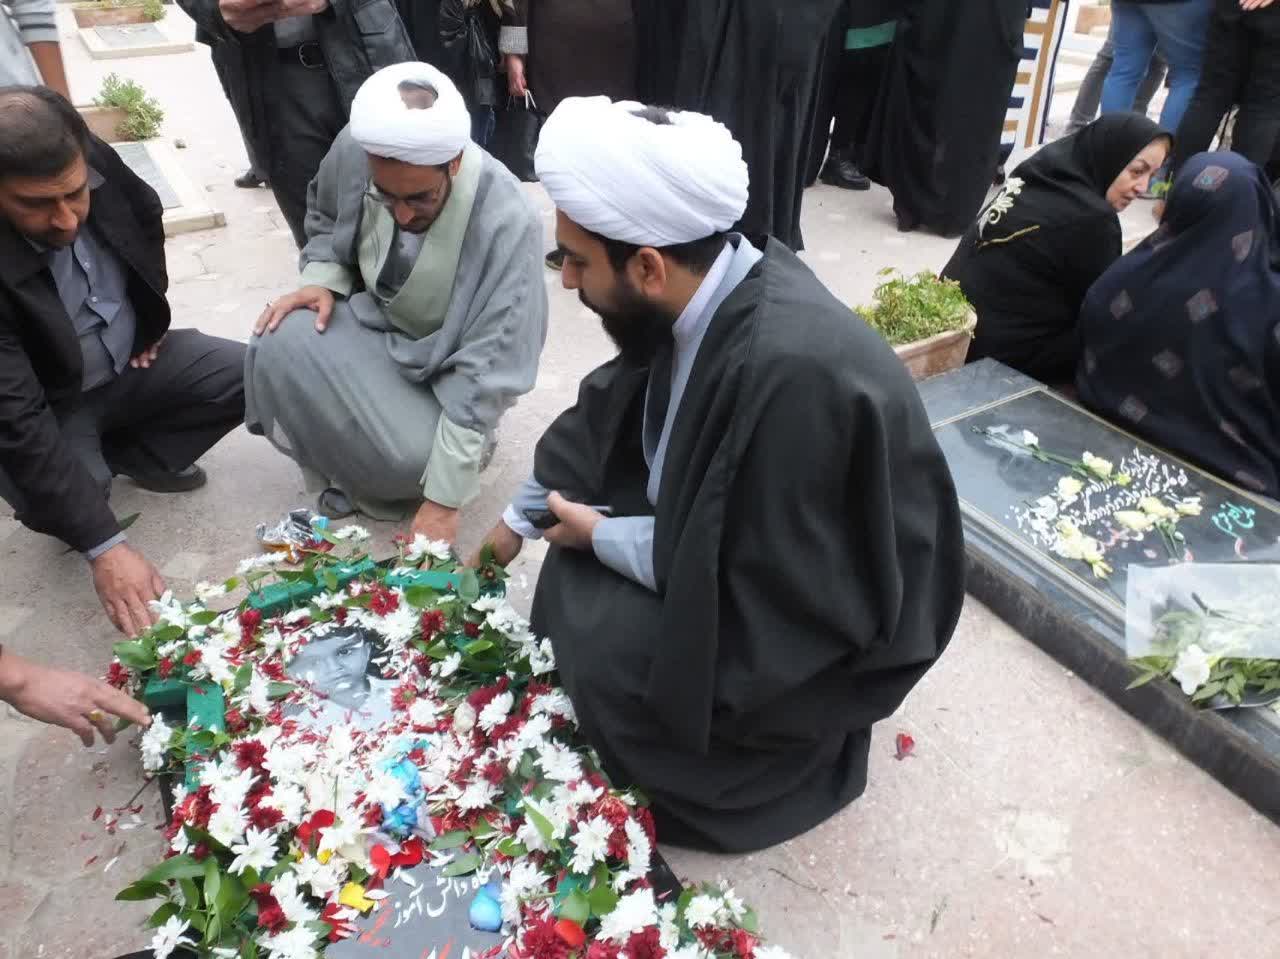 مراسم بزرگداشت شهدای حرم مطهر شاه چراغ و شهید دانش آموز علی اصغر گوئینی